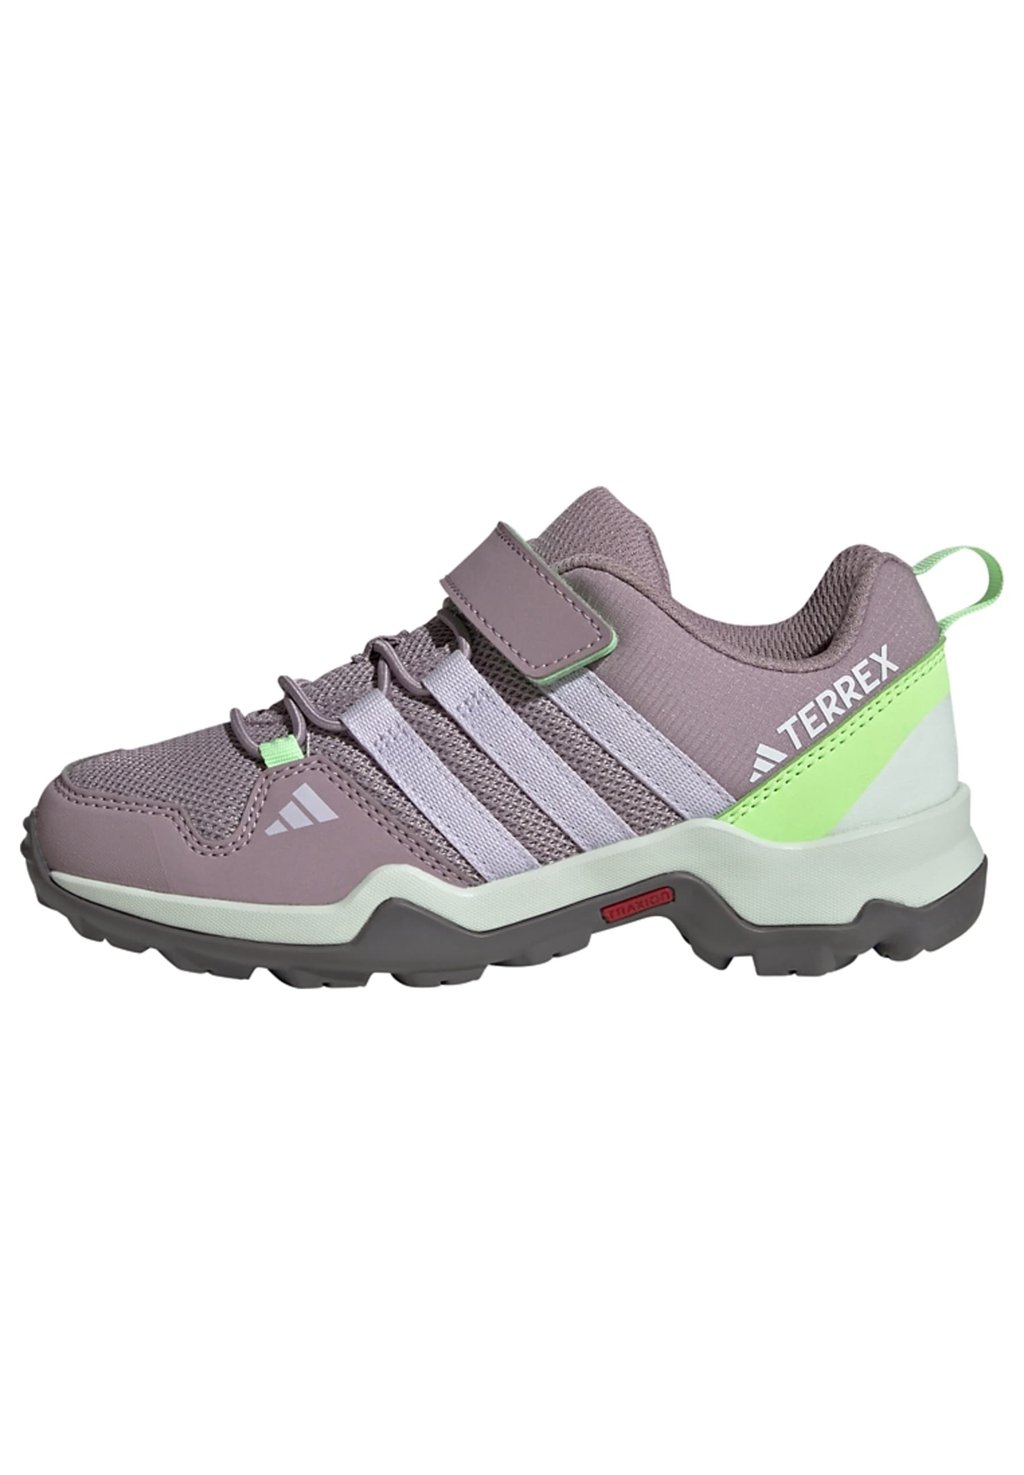 Походная обувь Adidas, любимый инжир/серебряный рассвет/зеленая искра